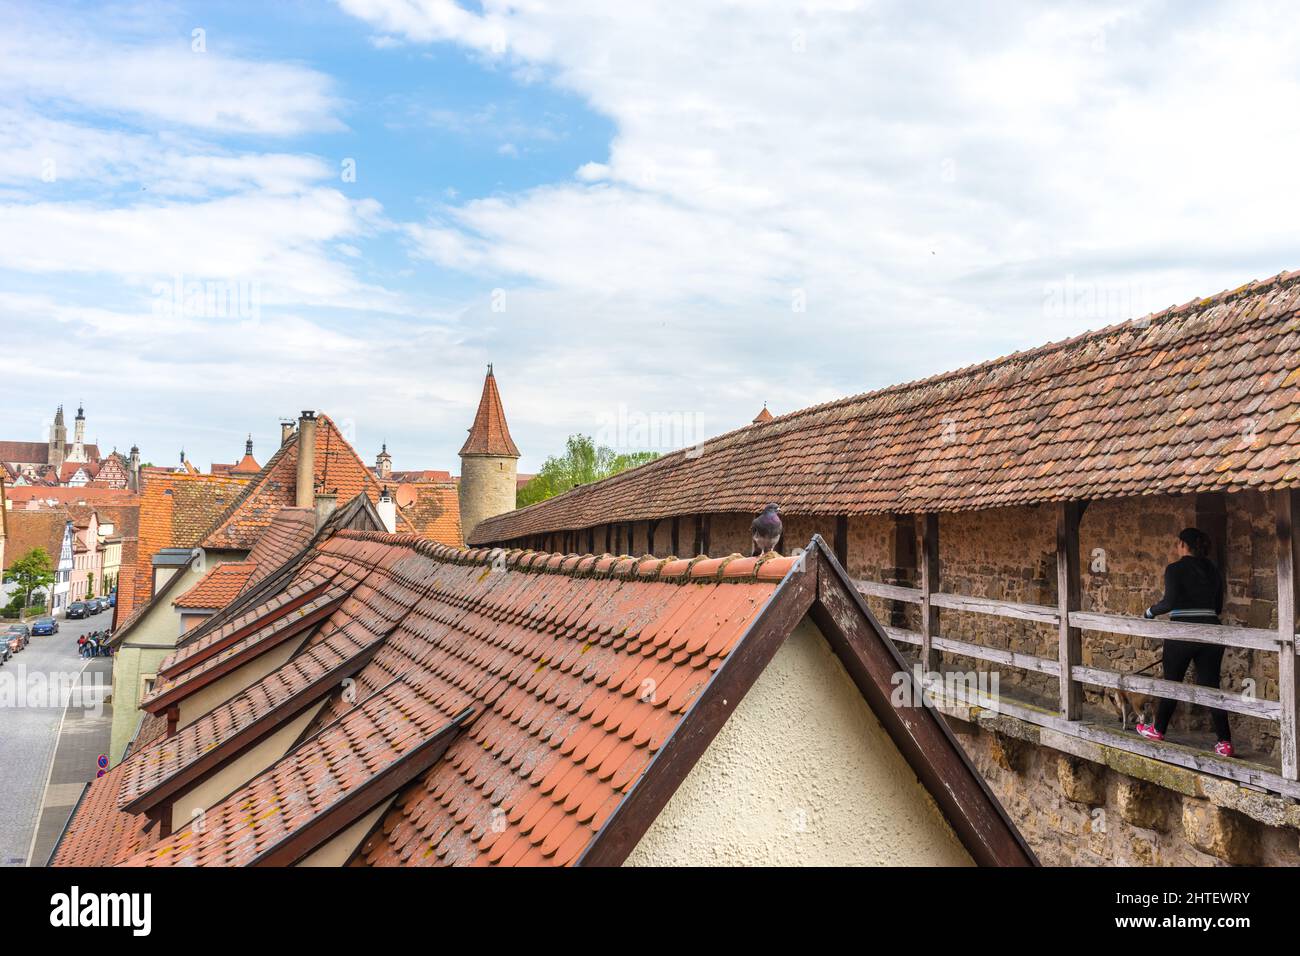 Eine Aufnahme von traditionellen Dächern von Gebäuden in einer Stadt aus einem hohen Winkel Stockfoto